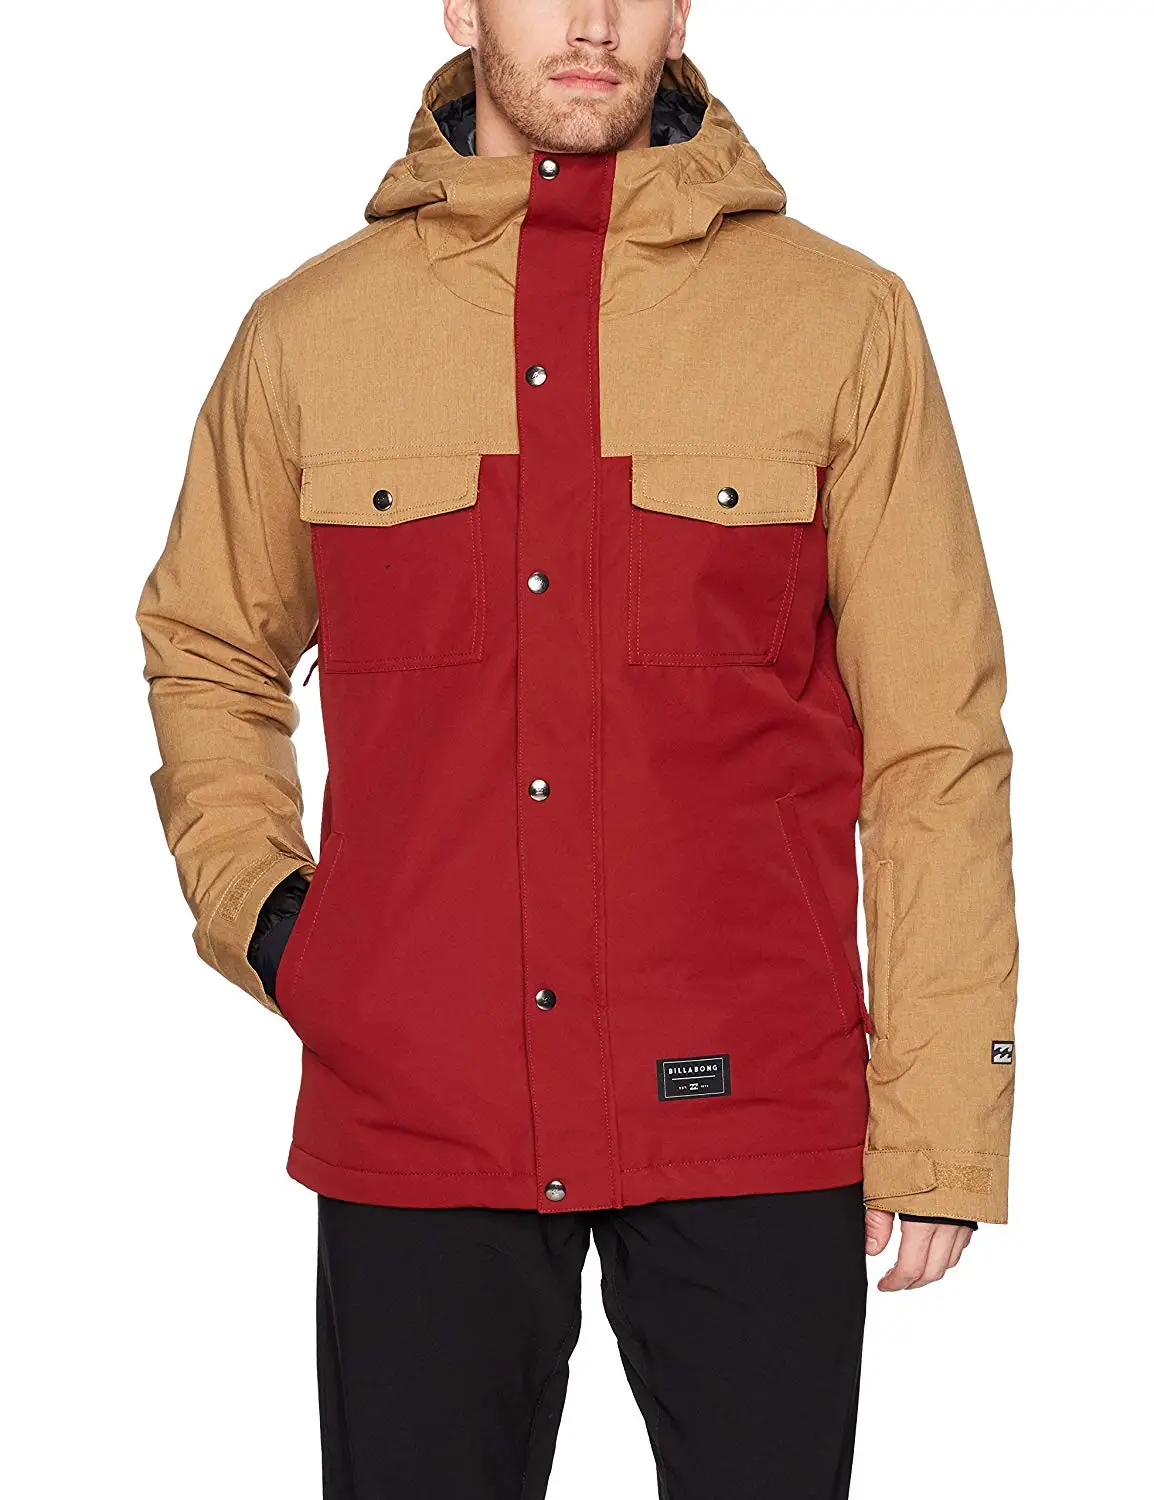 Cheap Billabong Snowboard Jacket, find Billabong Snowboard Jacket deals ...